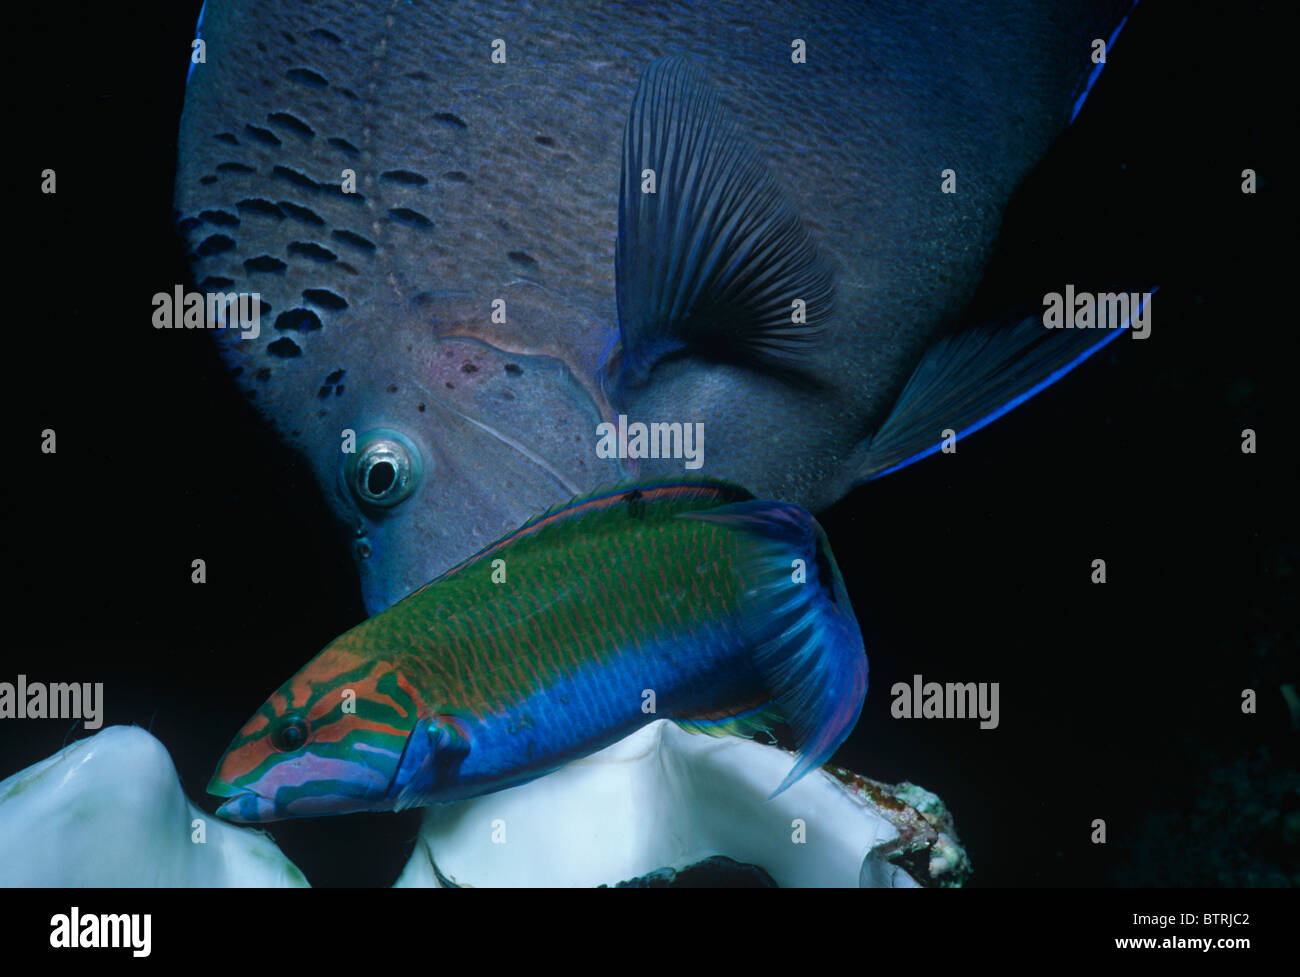 Angelfish Pomacanthus maculosus (Yellowband) et le napoléon (Thalassoma Klunzinger klunzingeri). Péninsule du Sinaï - Mer Rouge Banque D'Images